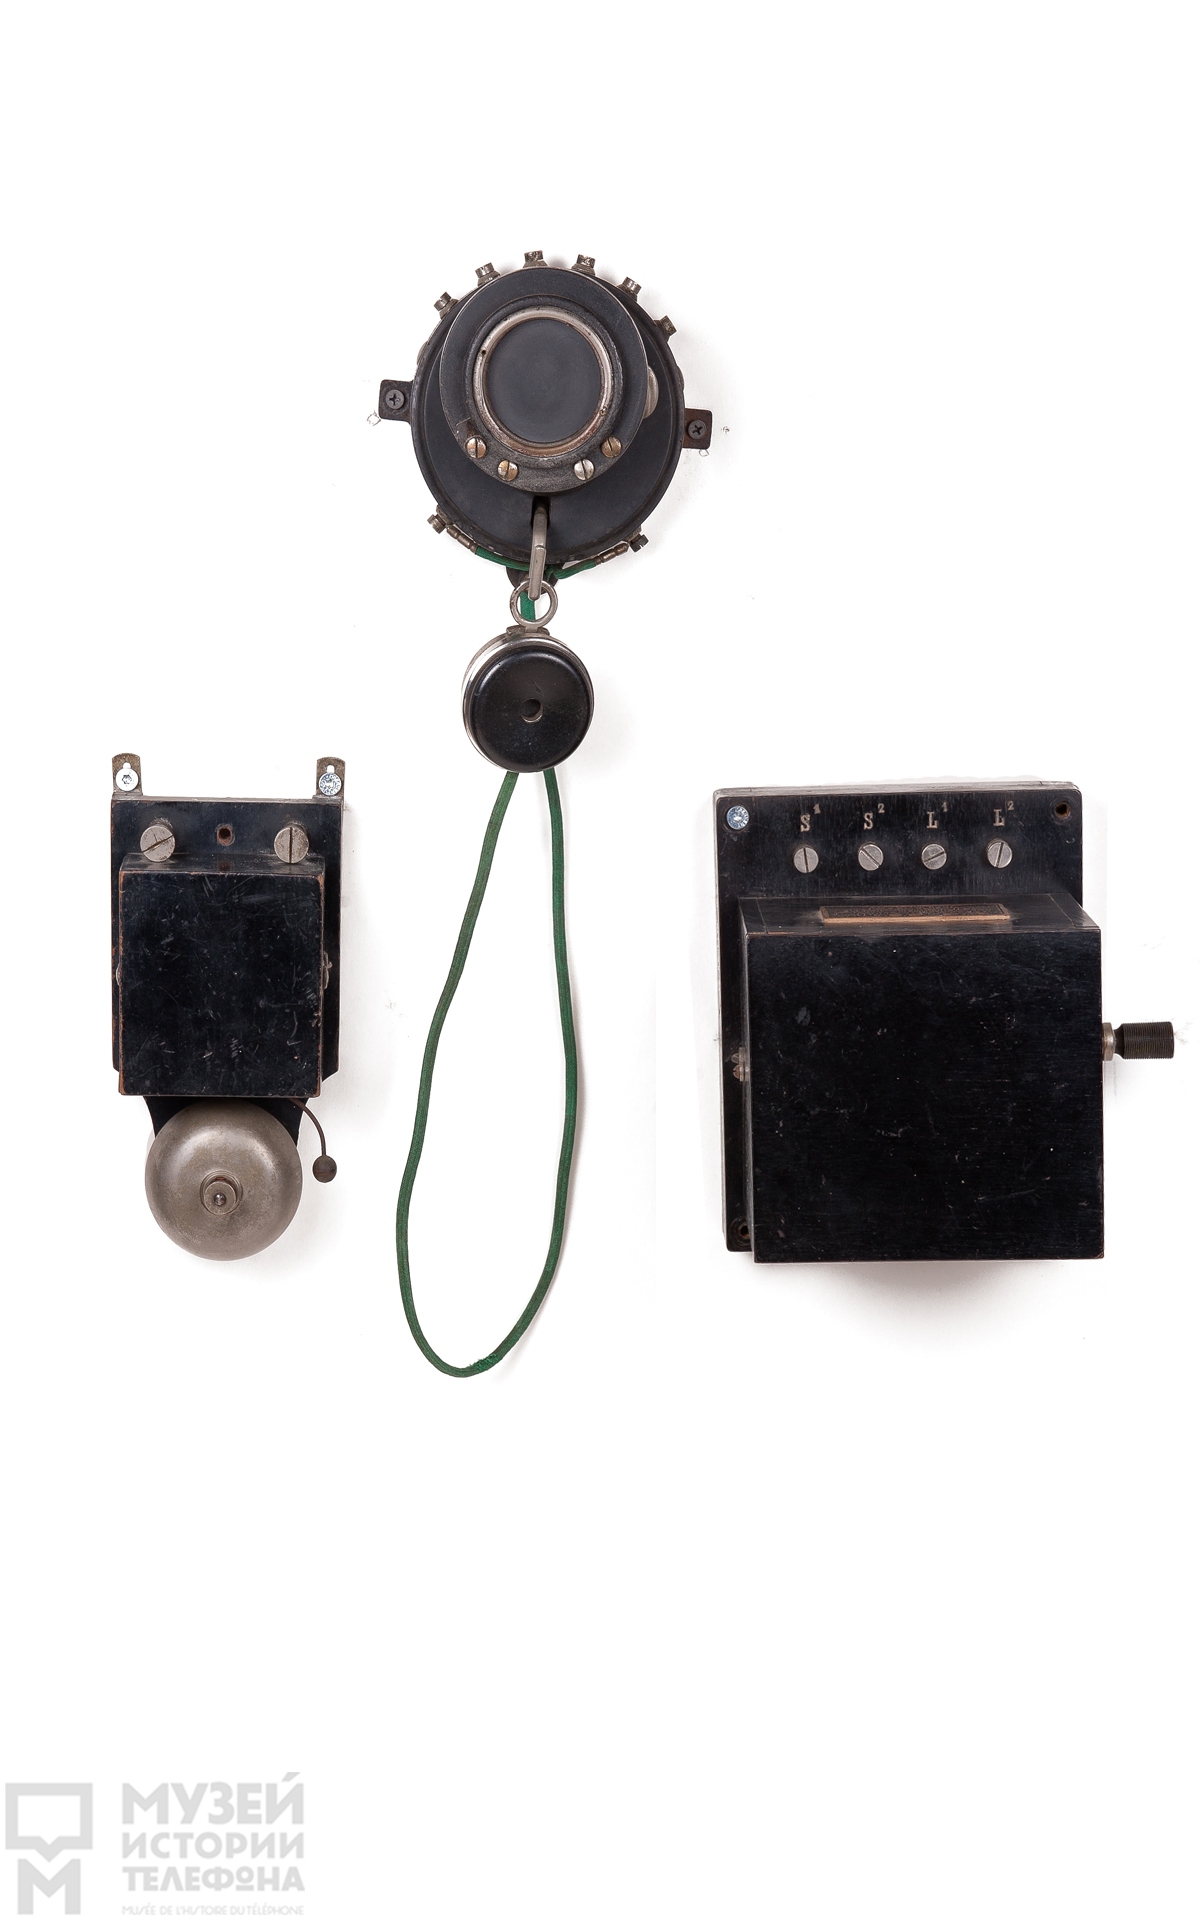 Телефонный аппарат батарейного вызова с угольным микрофоном системы А.Бертона и наушником конструкции К.Адера